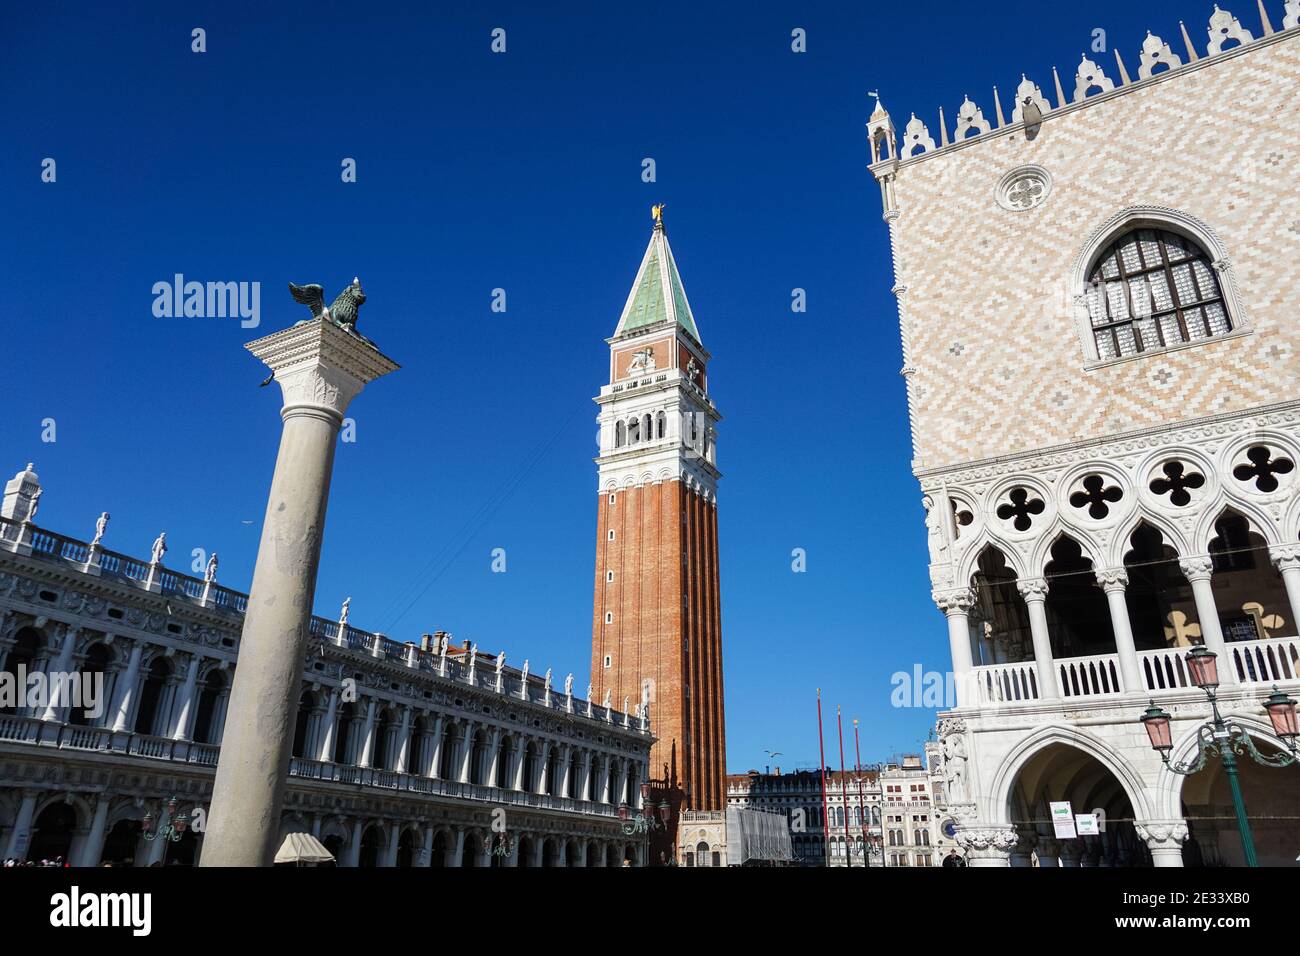 Piazza San Marco avec le Campanile de Saint Marc, le clocher de la basilique Saint-Marc, le Palais des Doges et la colonne de Saint-Marc à Venise, en Italie Banque D'Images